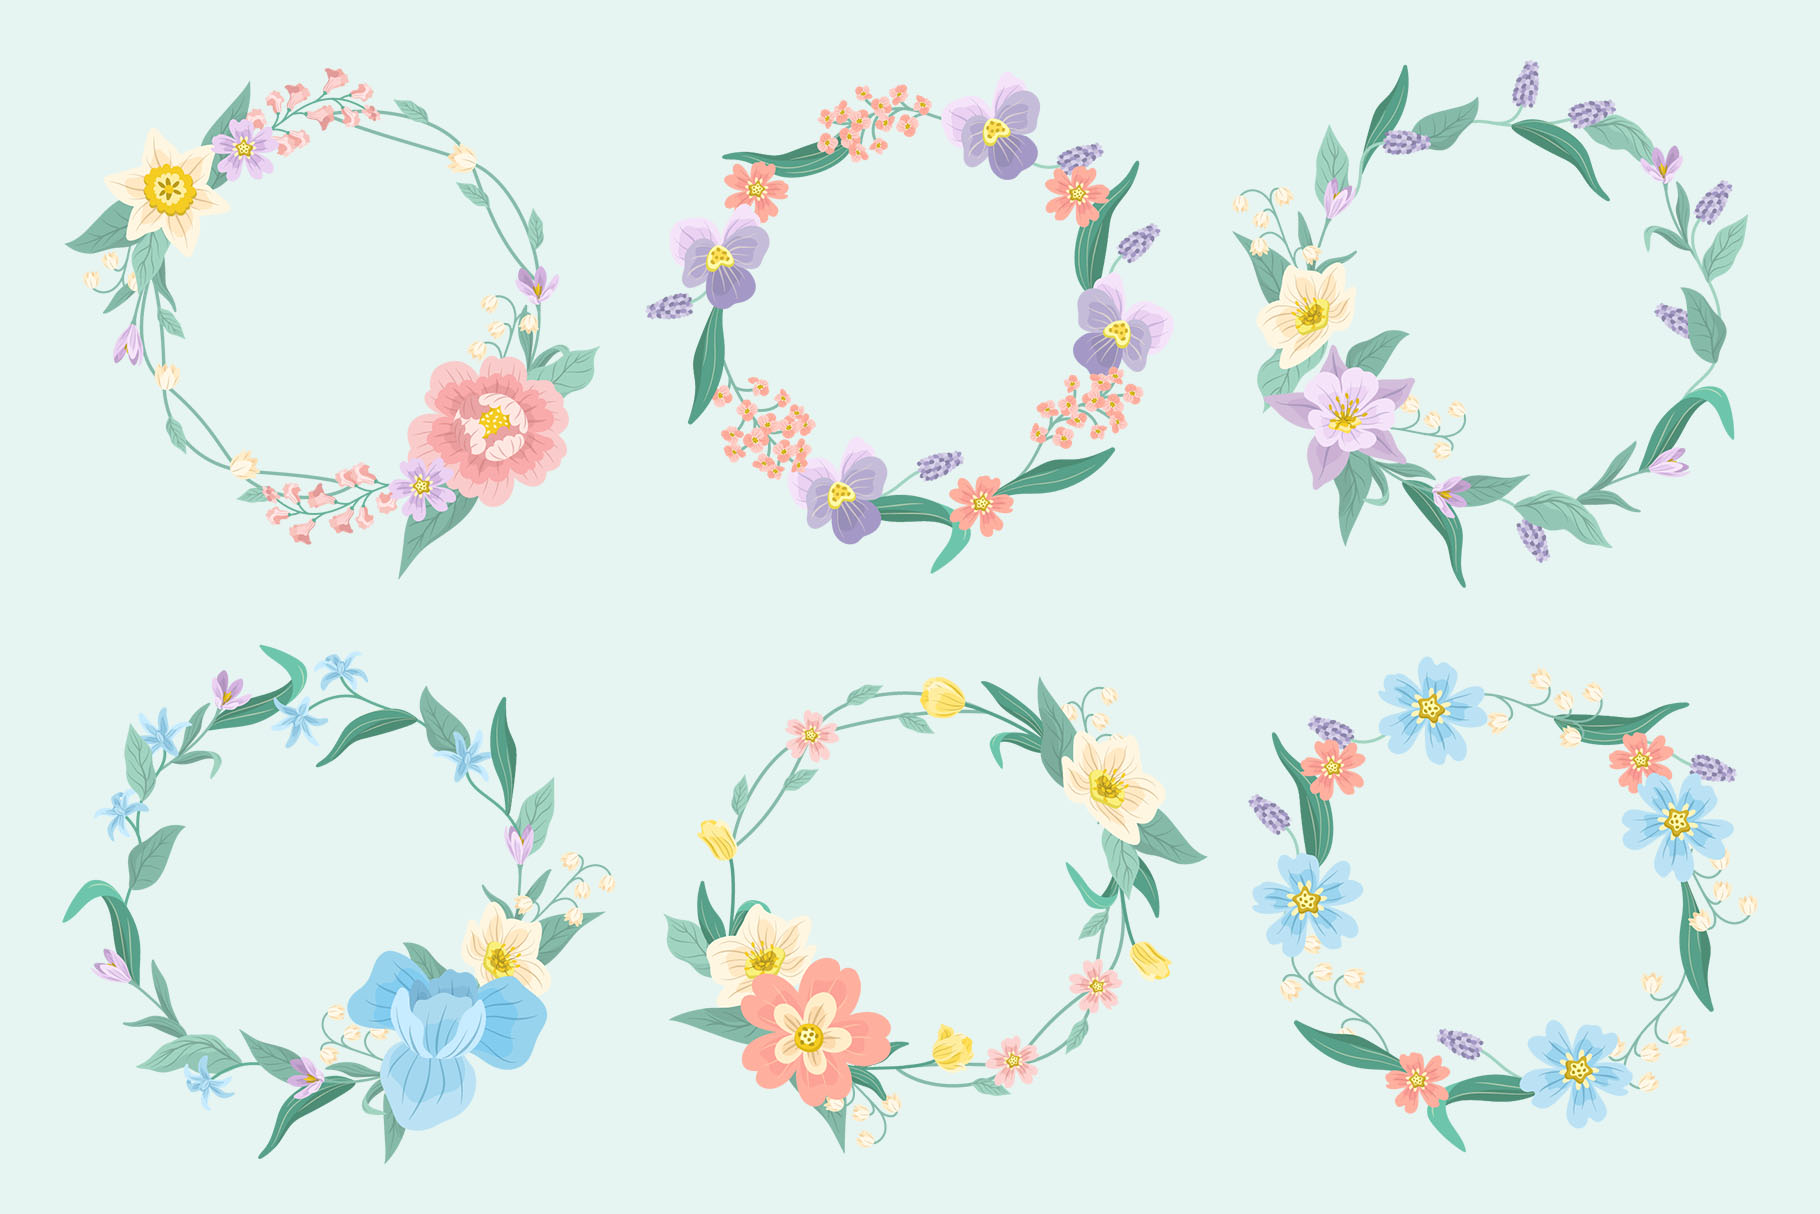 Springtime Flower Illustrations (AI, EPS, PNG Format)